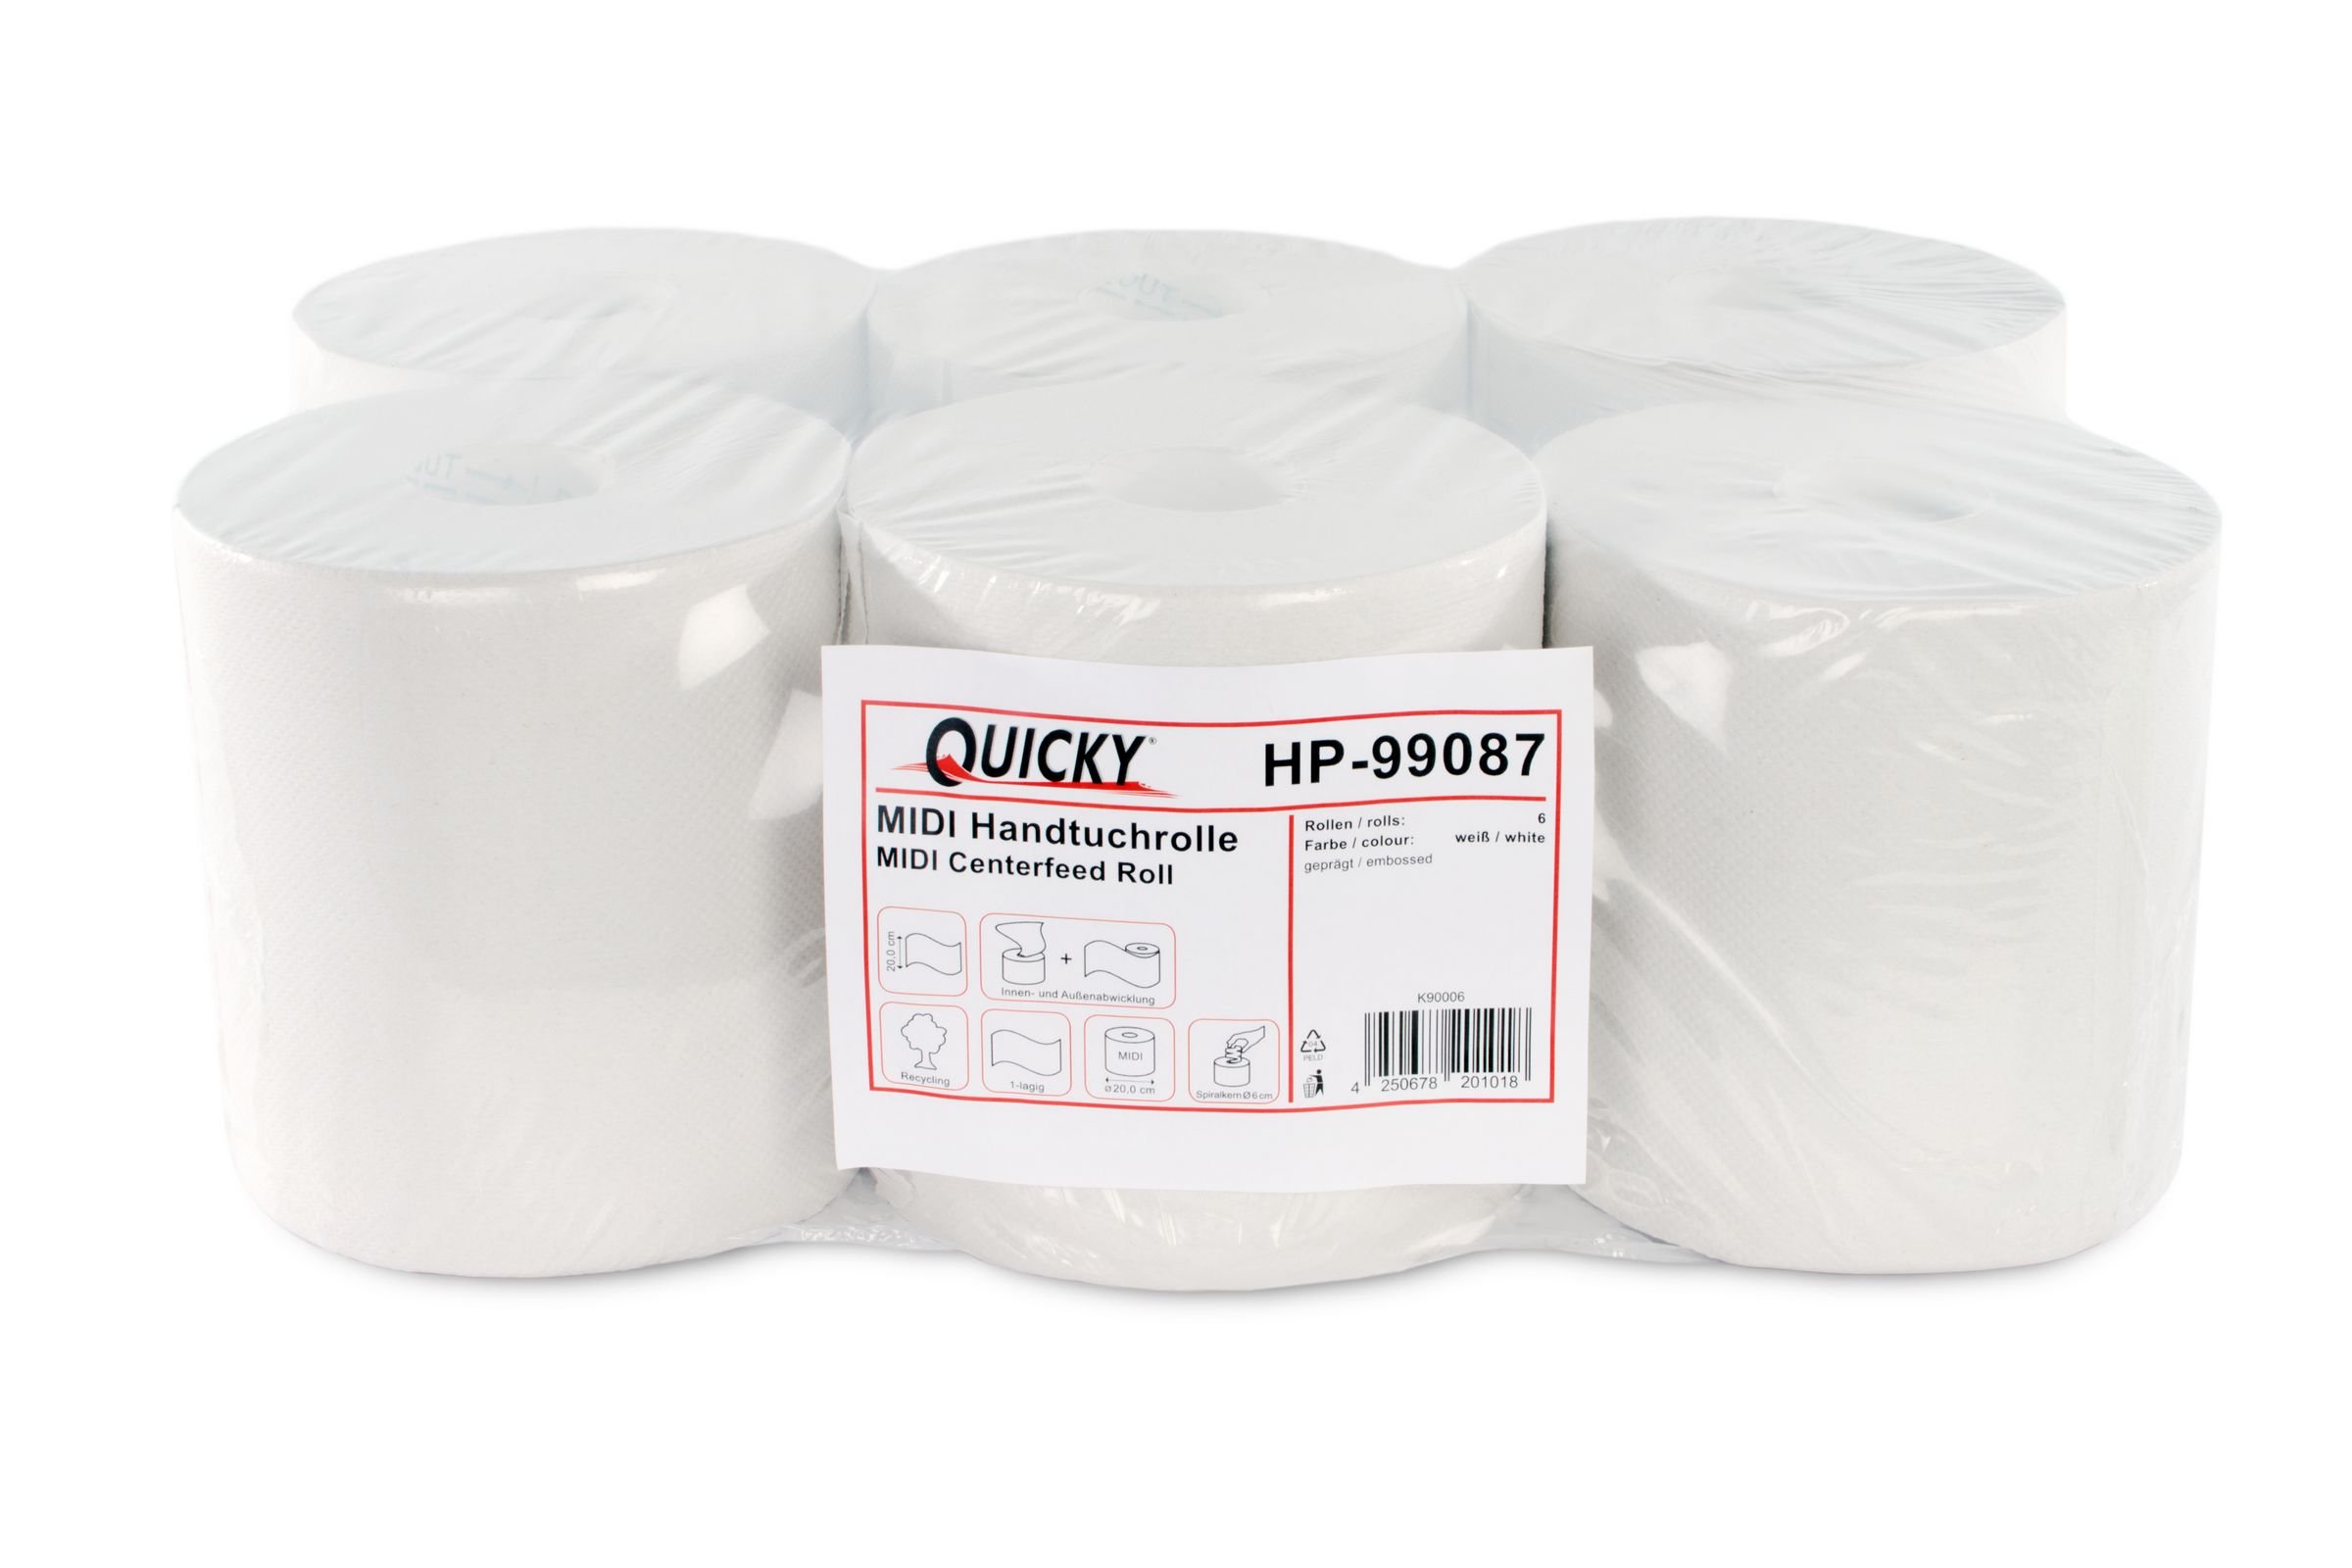 Quicky Handtuchrolle, Innenabwicklung 20 cm, 1 lagig, Recycling weiß, 1er Pack (1 x 6 Stück)